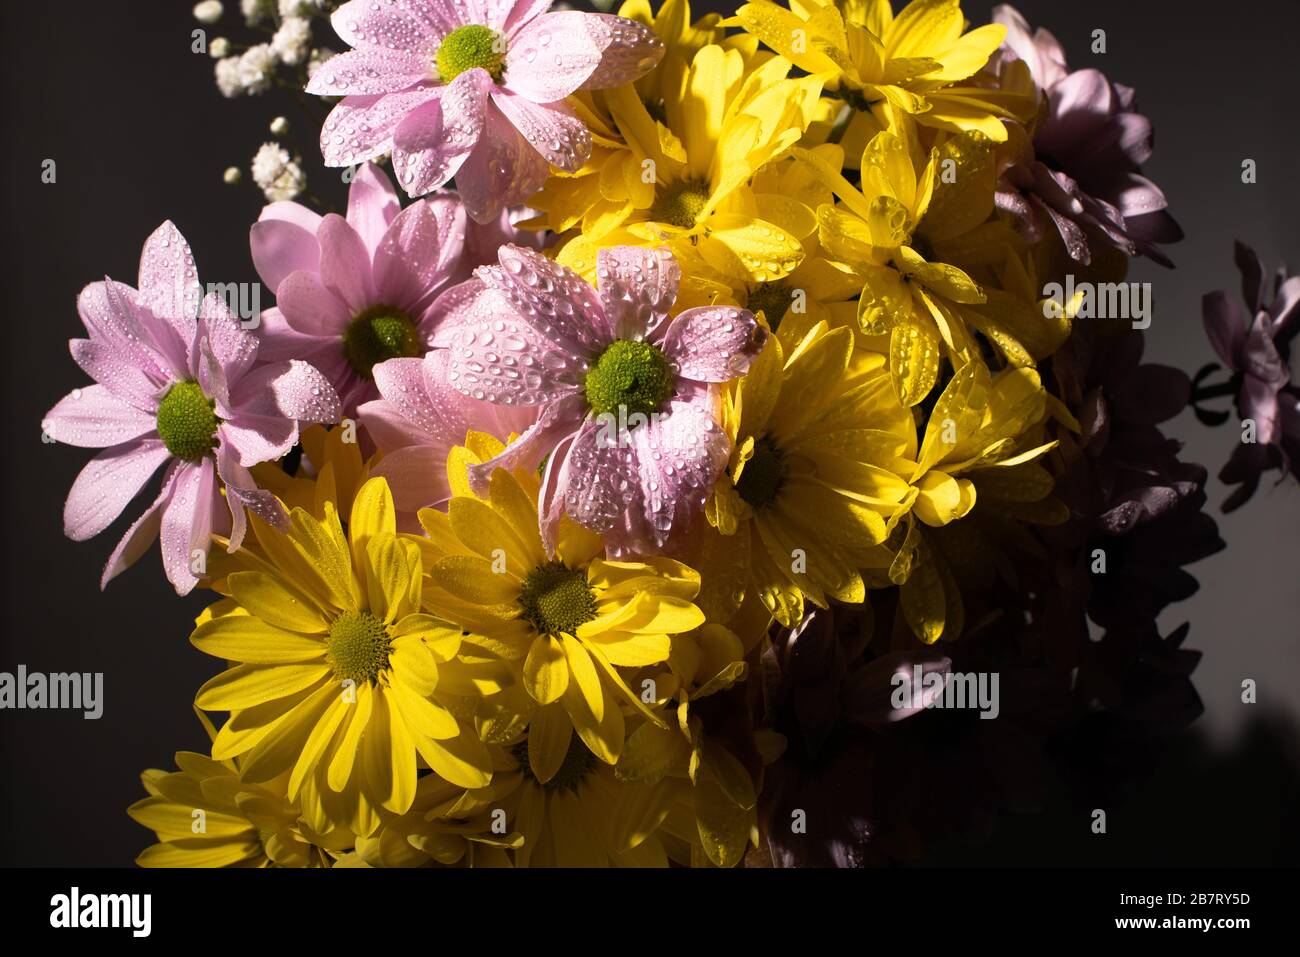 bouquet de daisies jaunes et violettes avec gouttes d'eau Banque D'Images